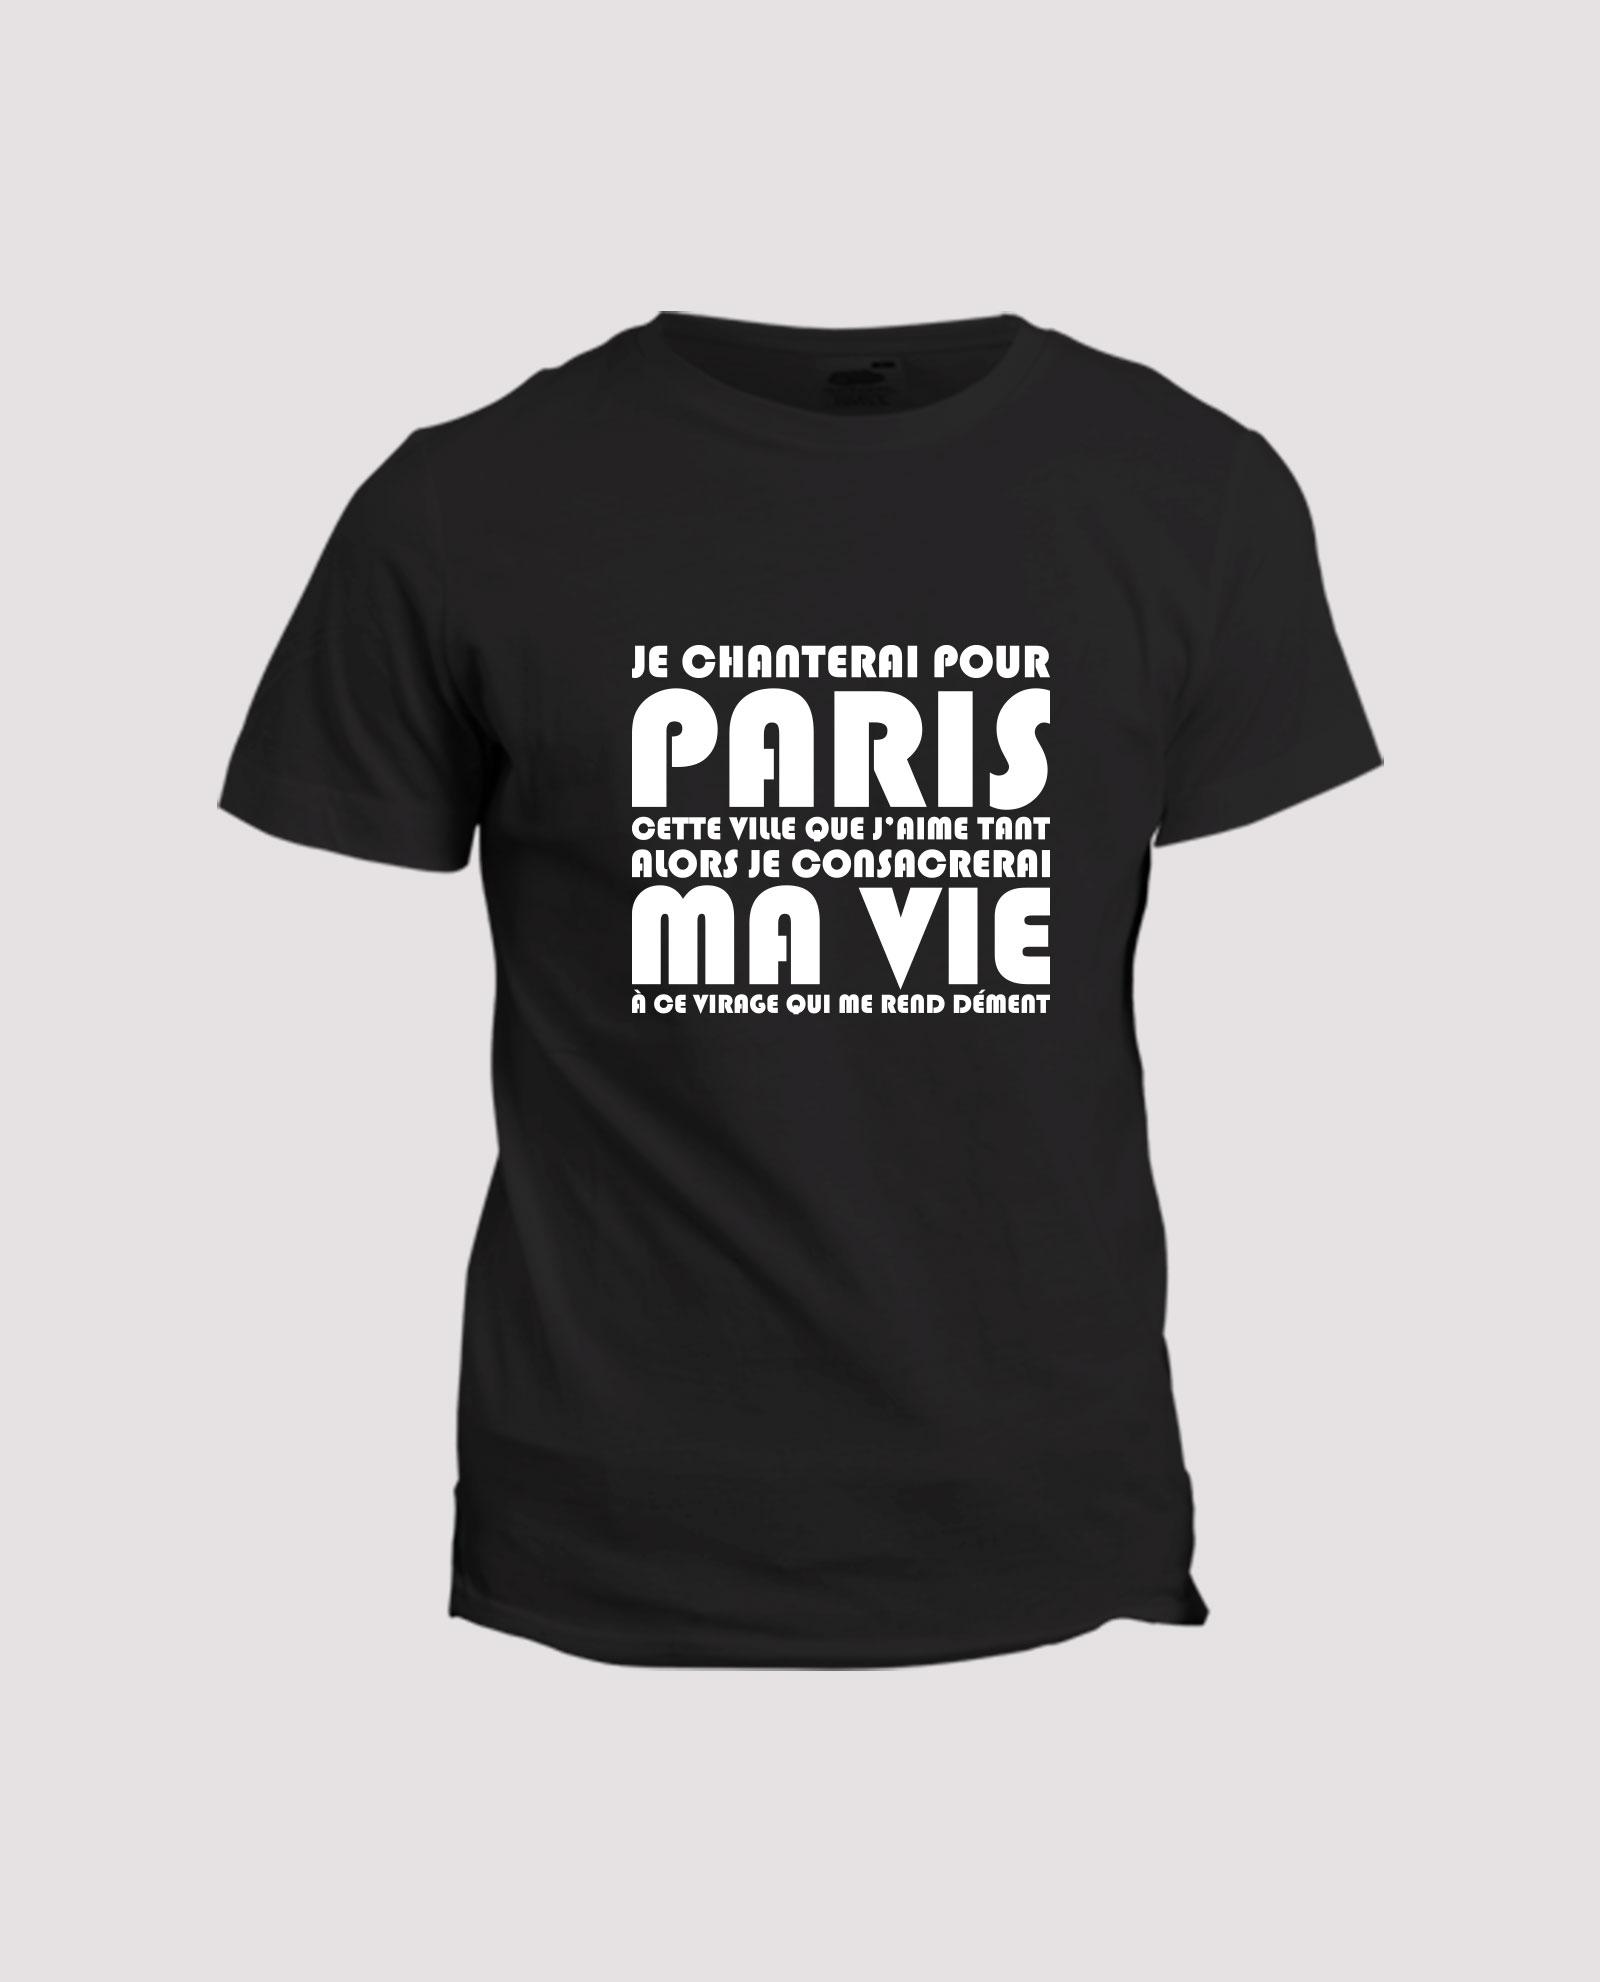 la-ligne-shop-t-shirt-football-chant-supporter-paris-saint-germain-virage-auteuil-psg-partenaire-particulier-je-chanterai-pour-paris-v2